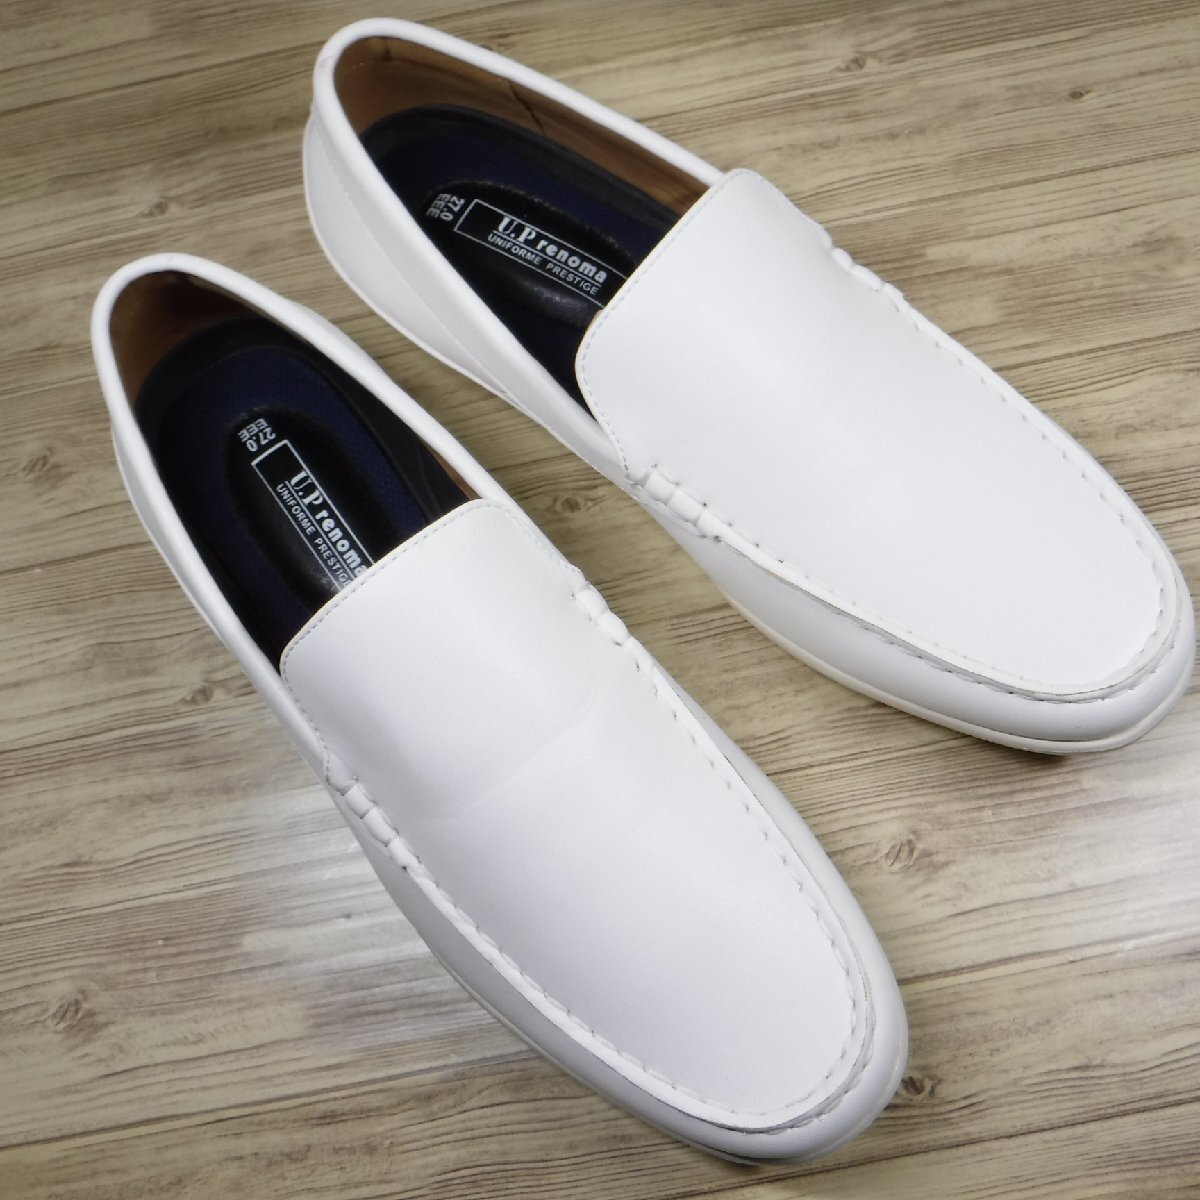 KK454ma гонг smadras новый товар U.P renoma Renoma новый товар белый супер-легкий туфли без застежки Loafer антибактериальный дезодорация водоотталкивающий эффект 27.0 3E обувь для вождения 